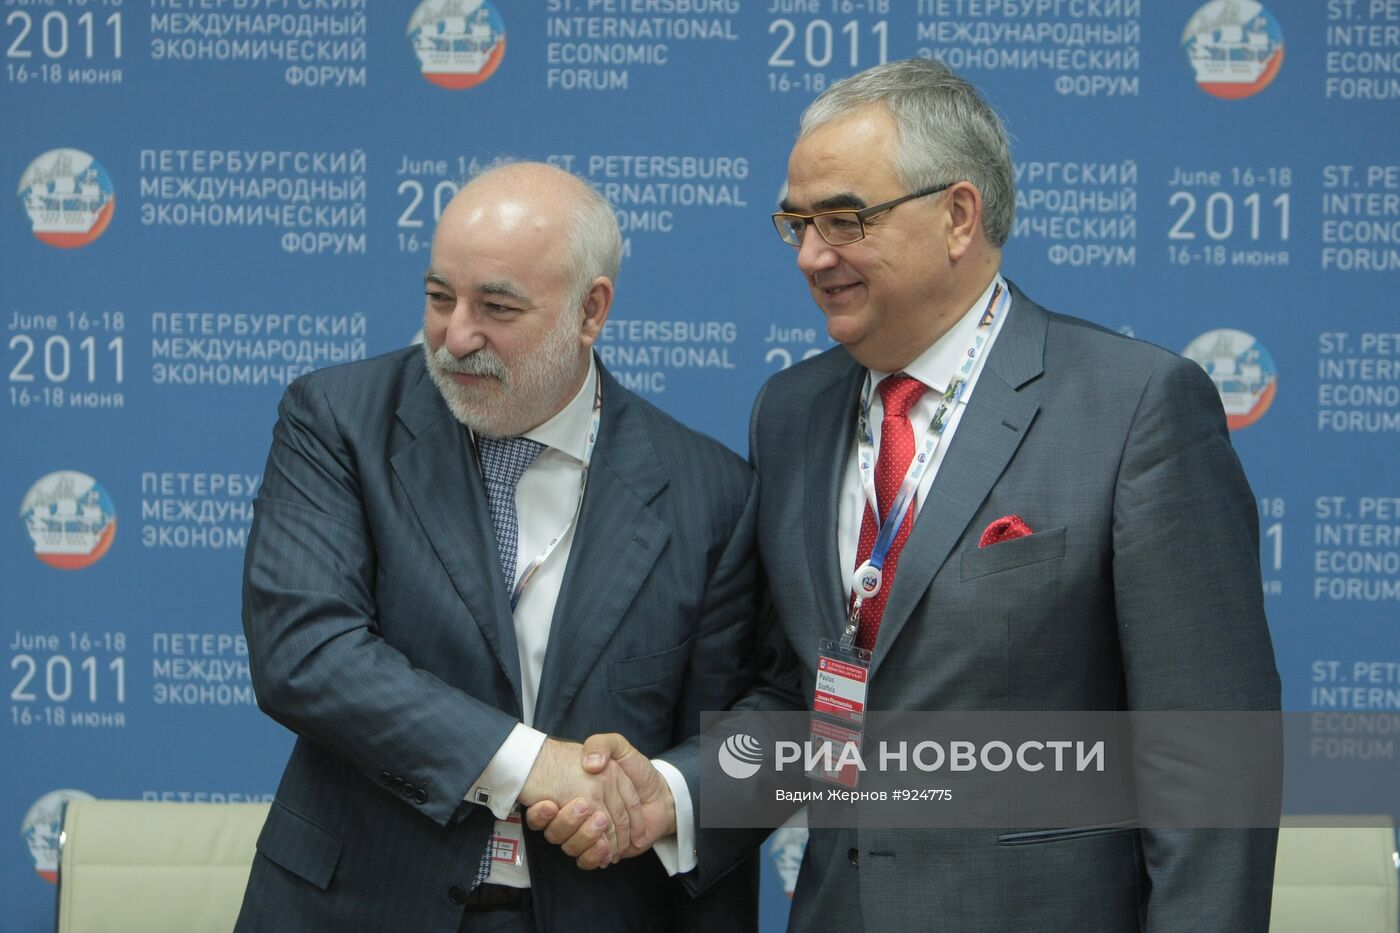 XV Петербургский международный экономический форум (ПМЭФ)